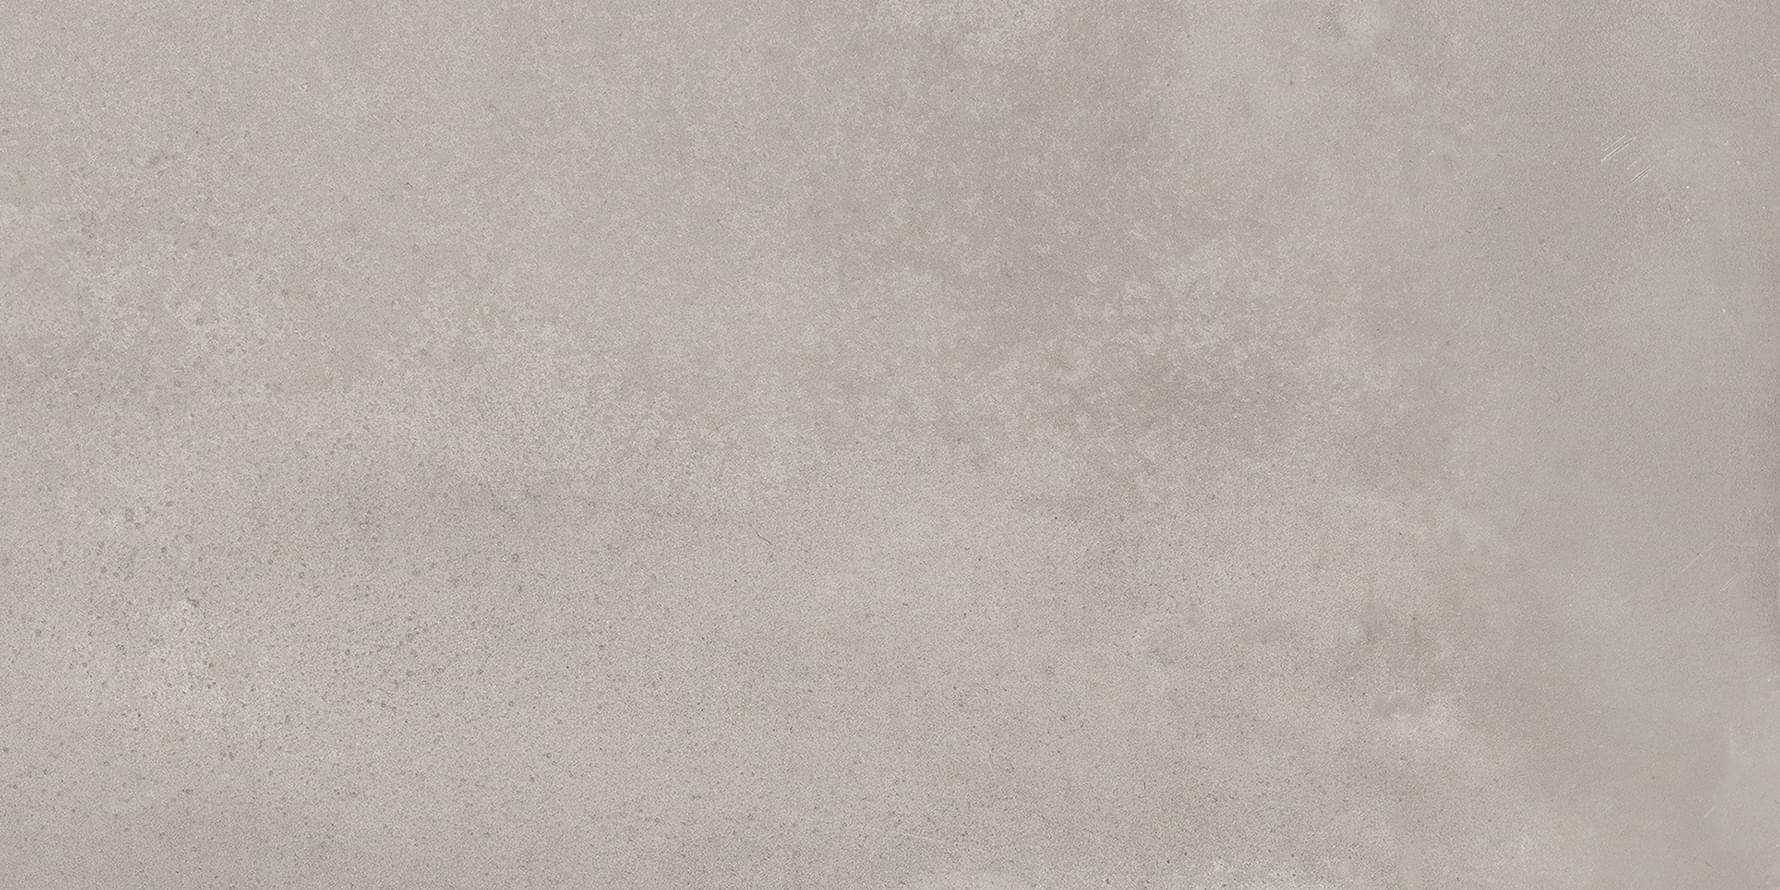 Ergon Tr3nd Concrete Grey 30x60